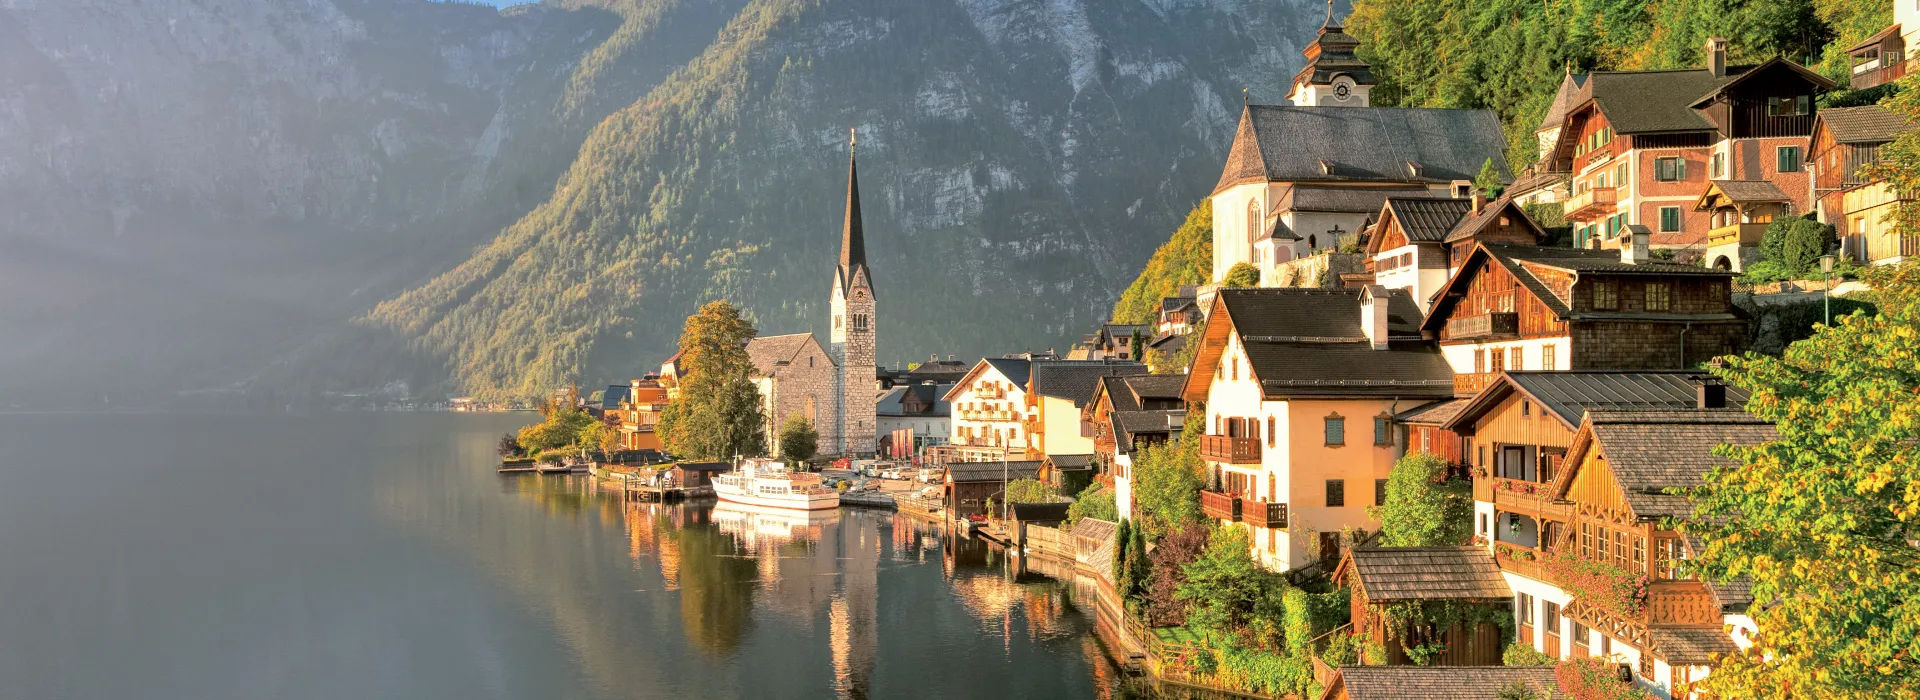 Urlaub in Österreich background image